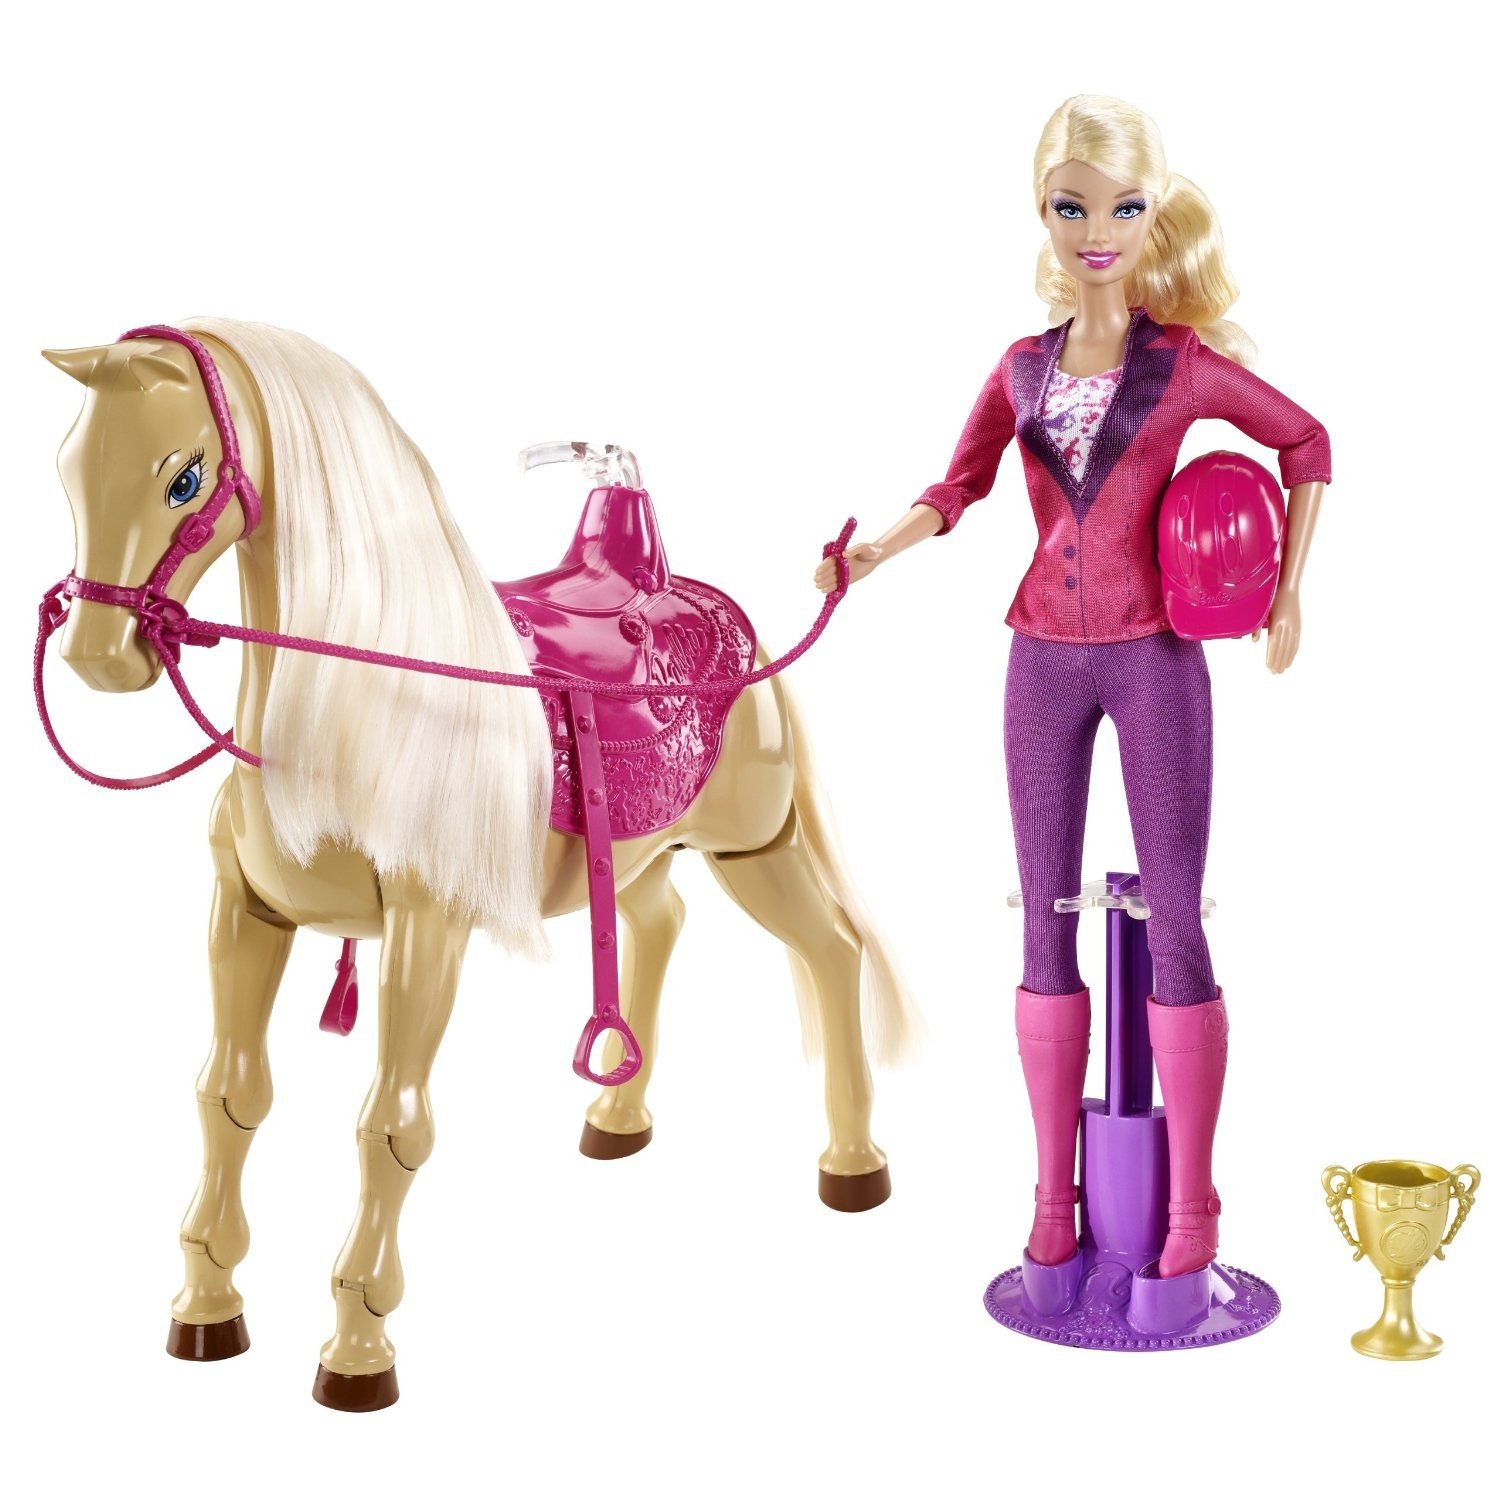 Poupée Barbie et cheval, poupée Barbie équestre avec jambes